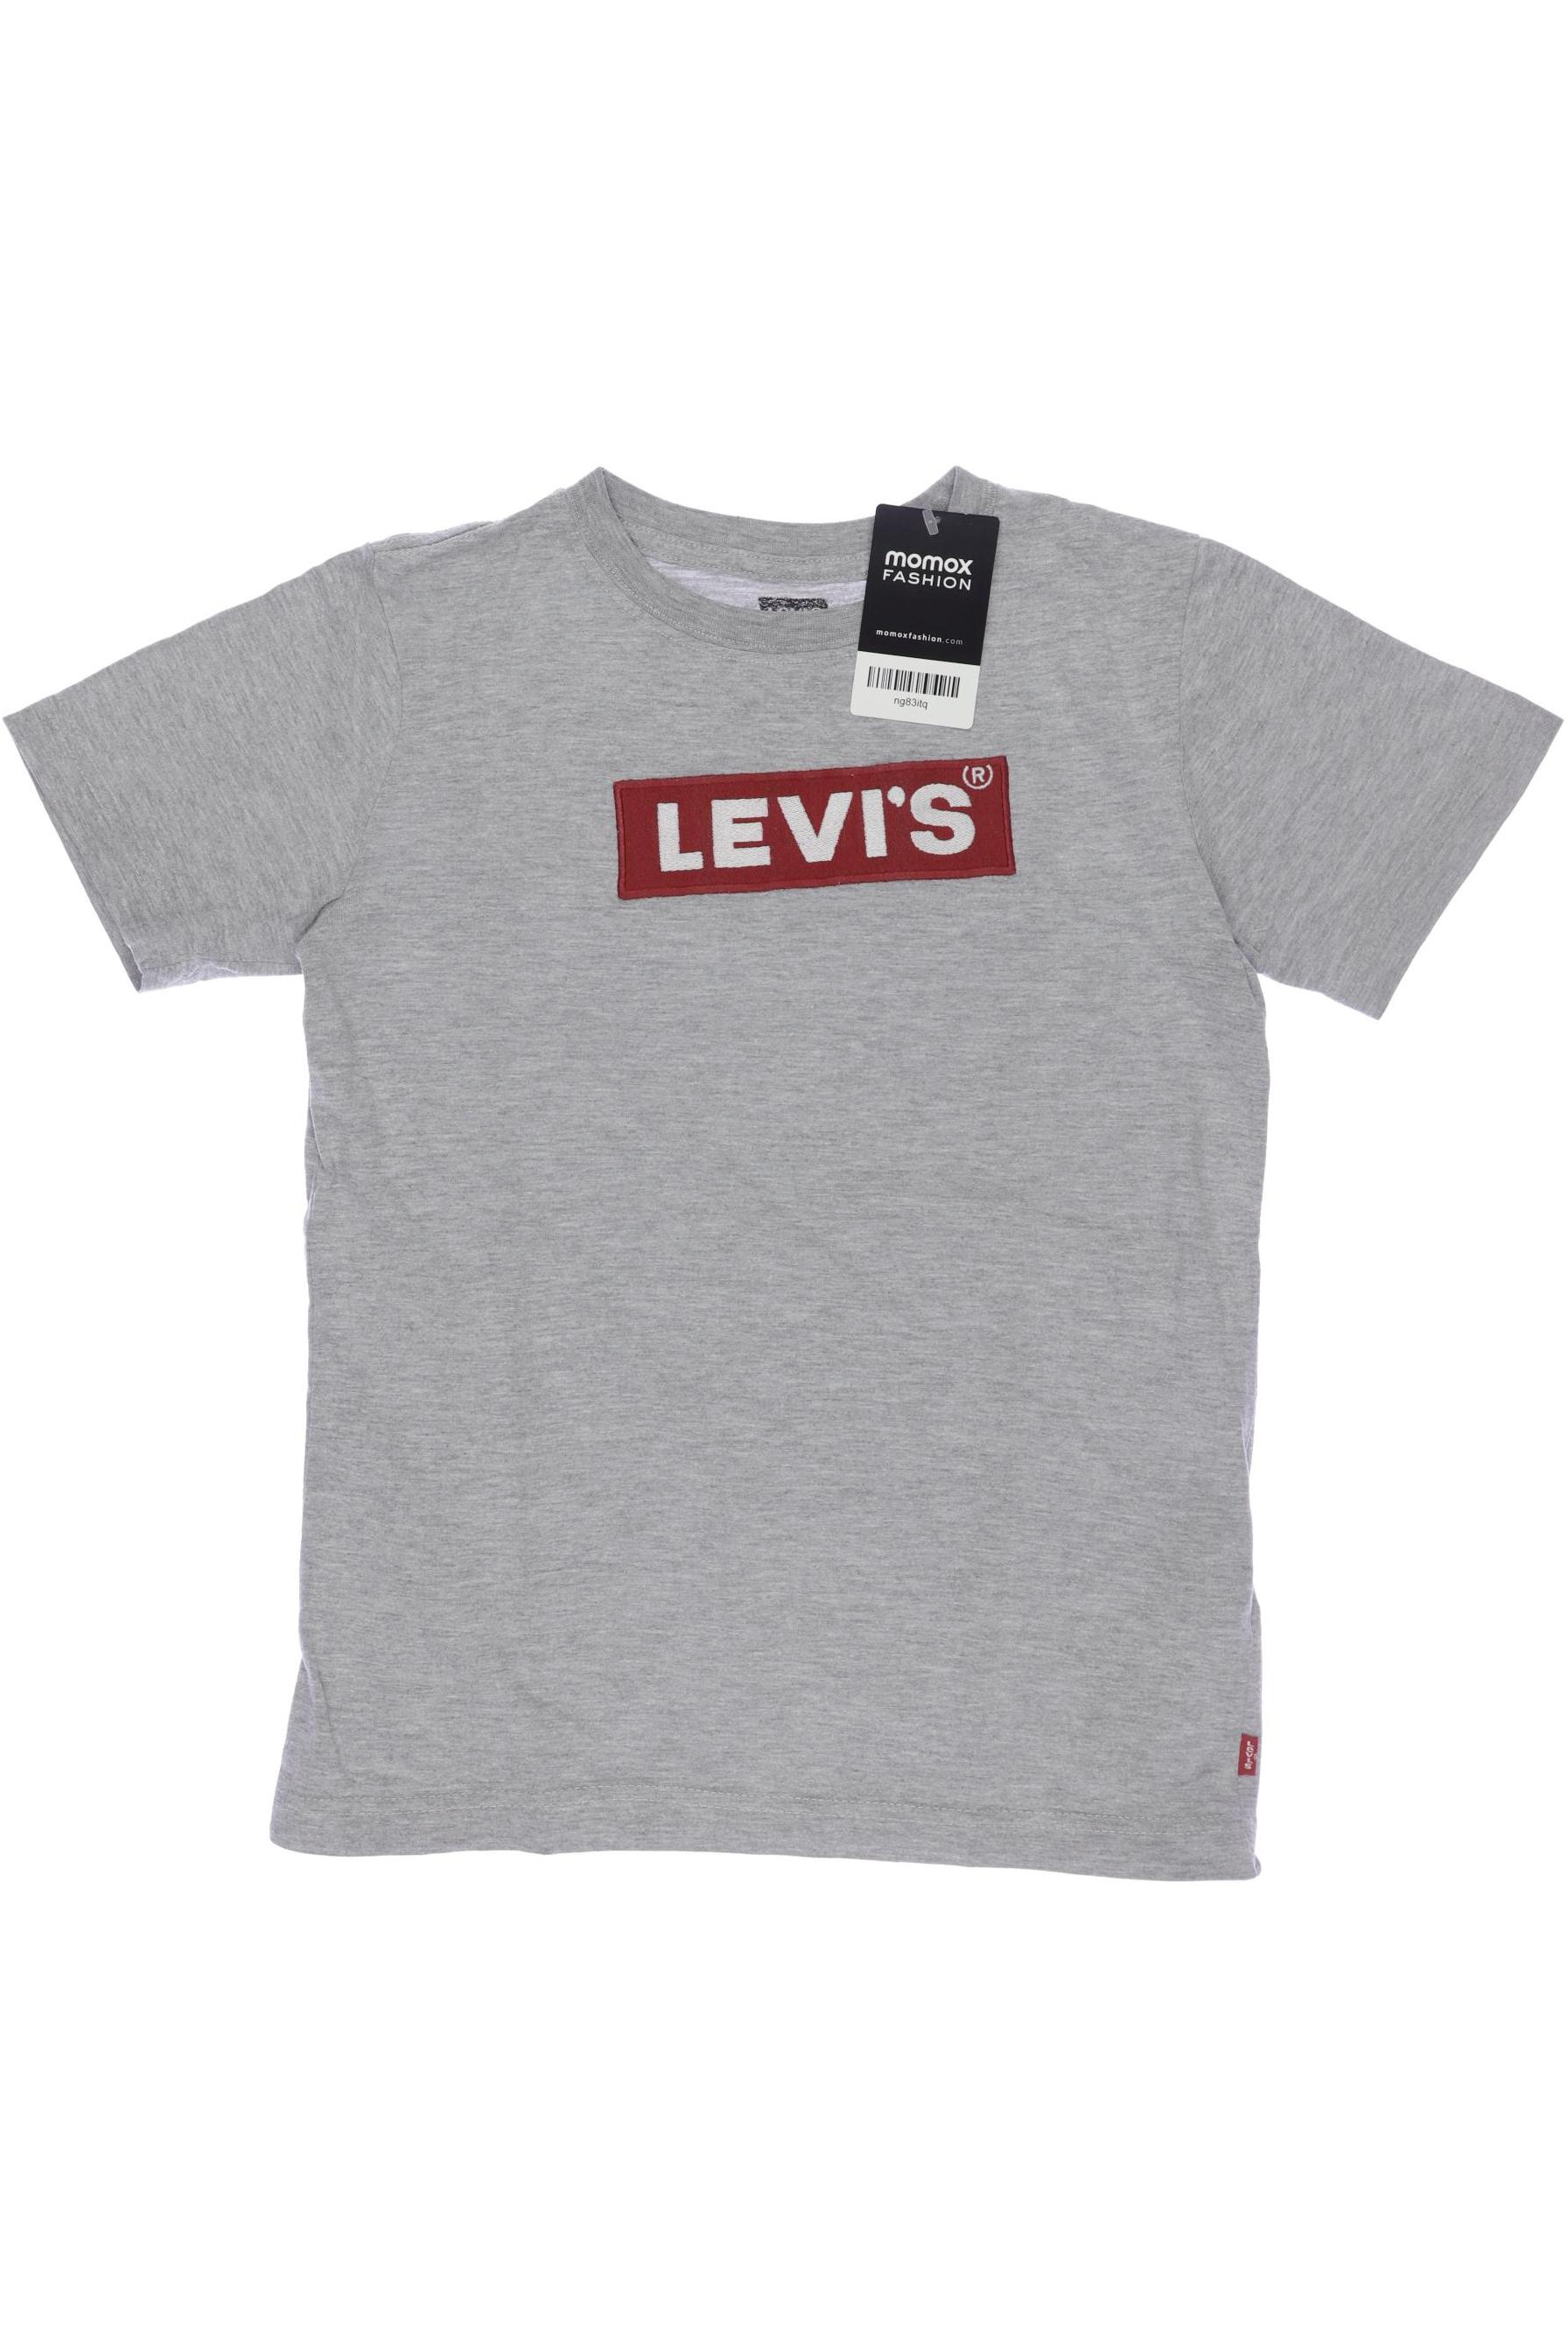 Levis Jungen T-Shirt, grau von Levis